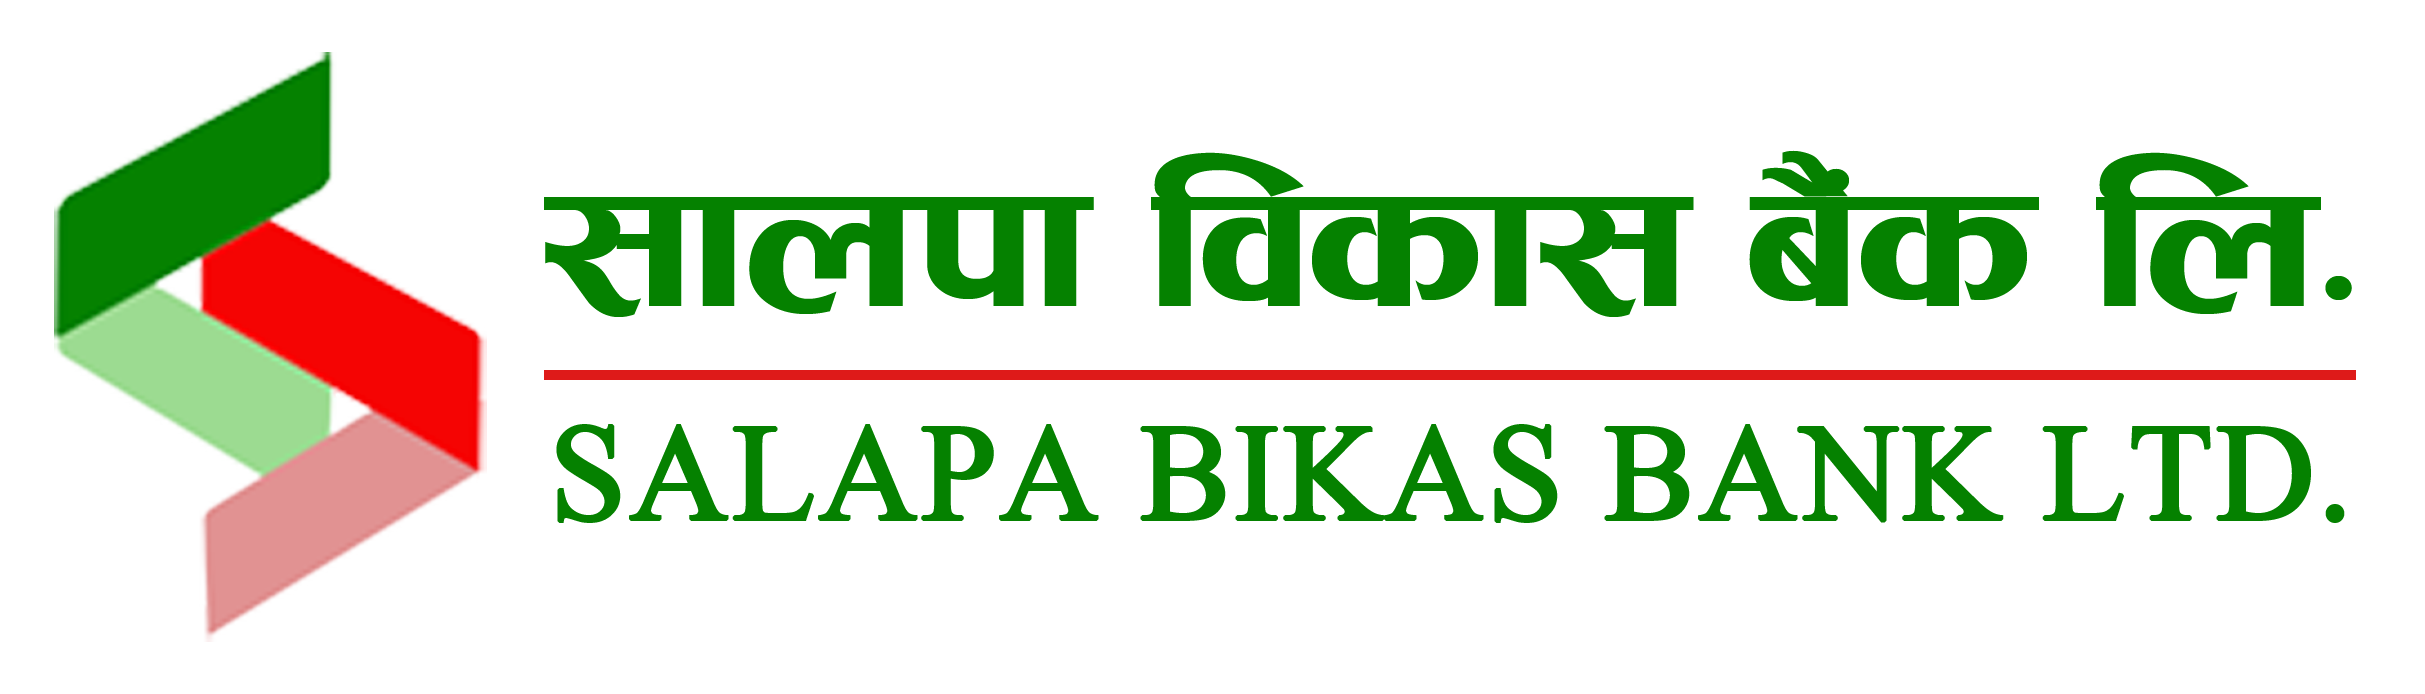 Salapa Bikas Bank Ltd.